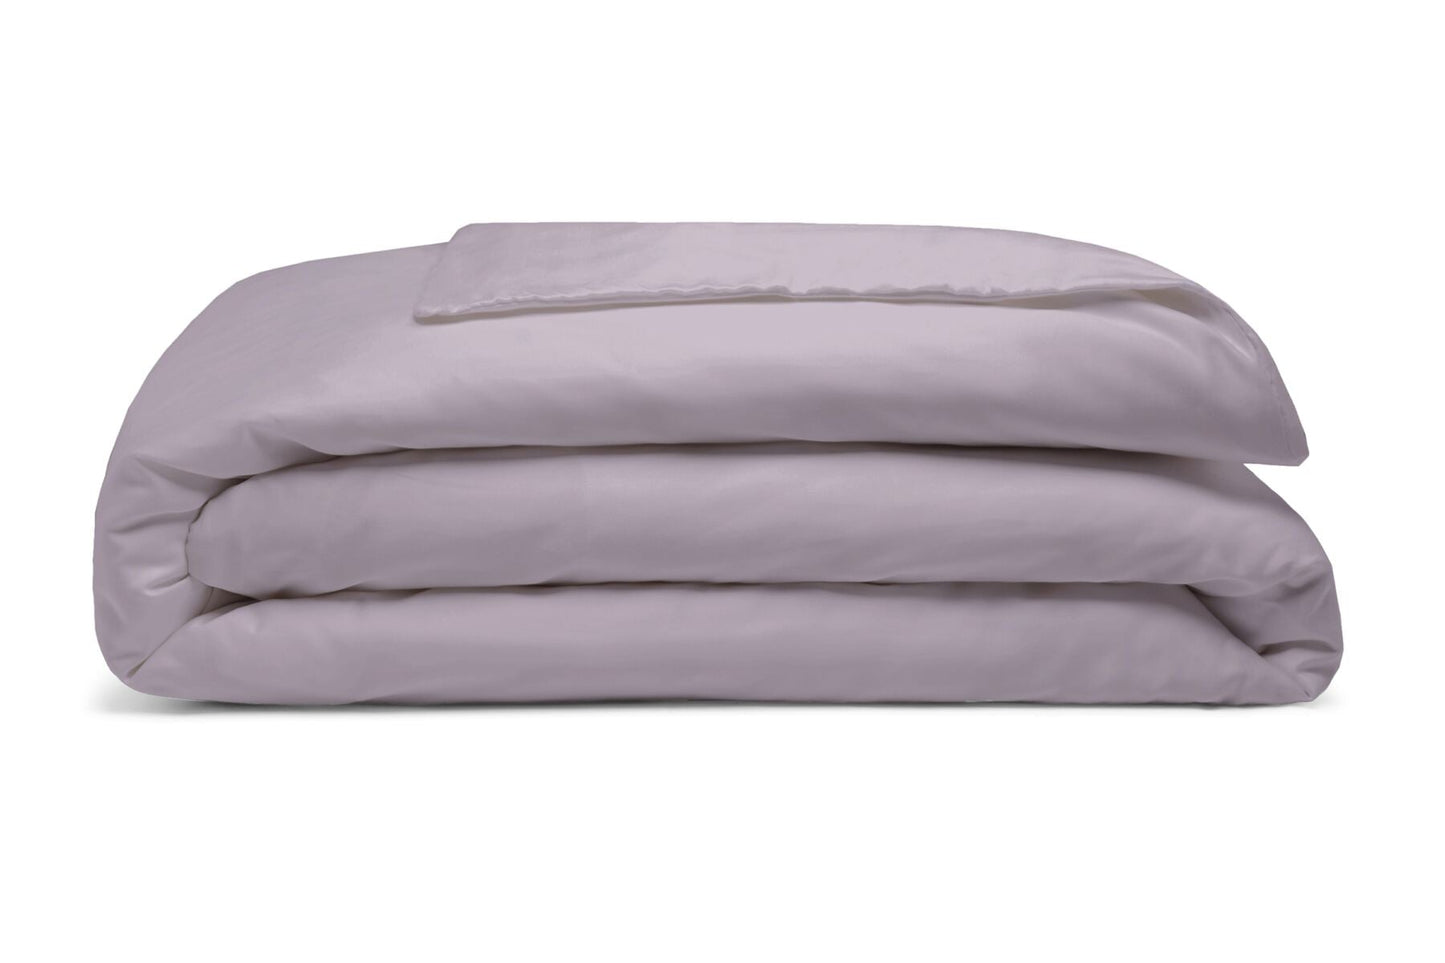 Paquete de ropa de cama doble con forma de mano derecha de algodón egipcio 